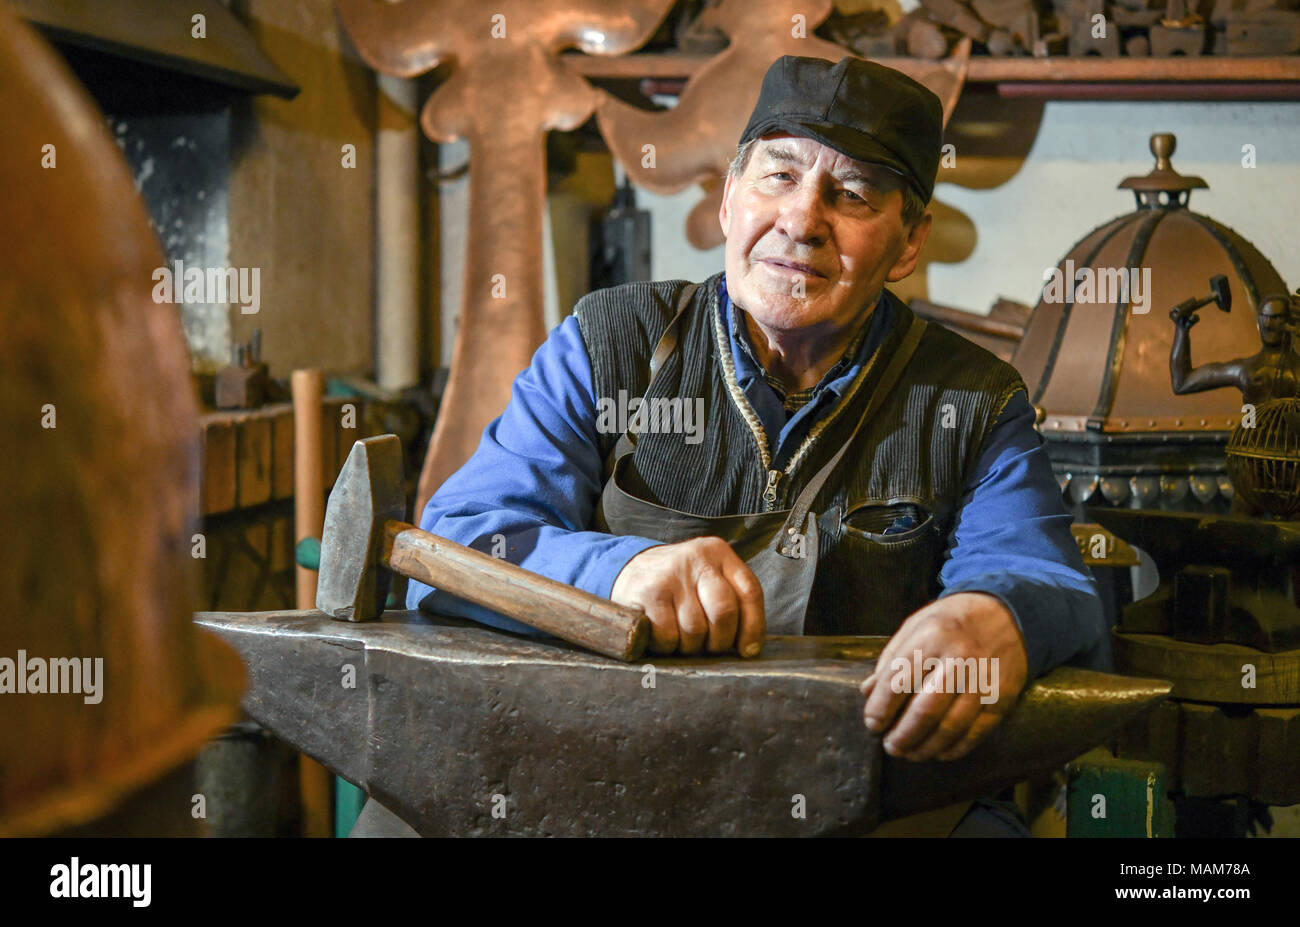 14 marzo 2018, Germania, Angermuende: Master builder di metallo Wilfried Schwuchow seduti dietro un'incudine nella sua bottega. Foto: Patrick Pleul/dpa-Zentralbild/ZB Foto Stock